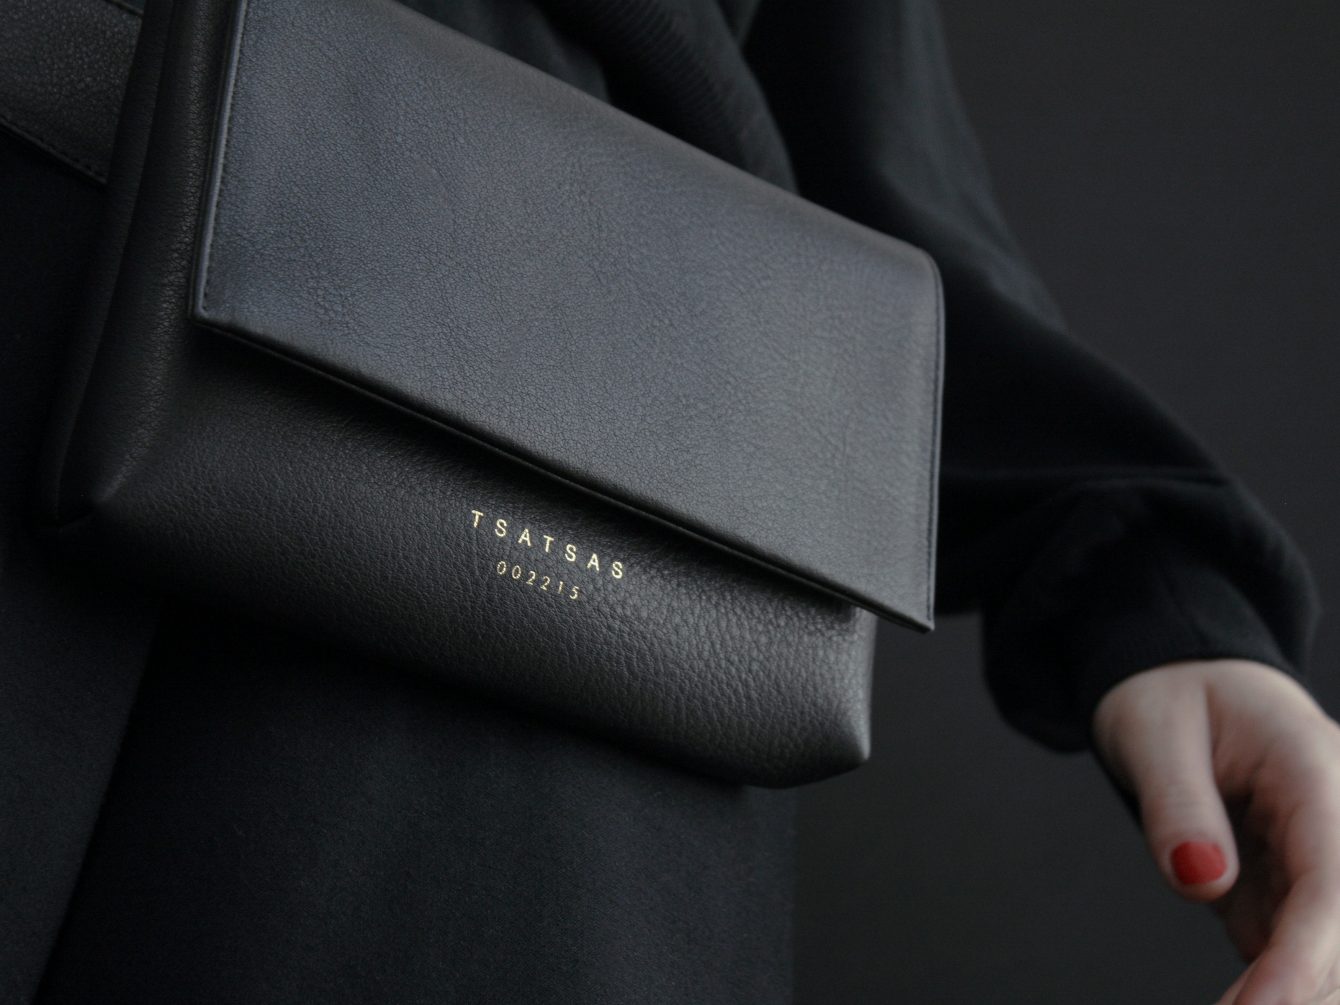 SOMA collection in black calfskin leather by Dimitrios Tsatsas | TSATSAS